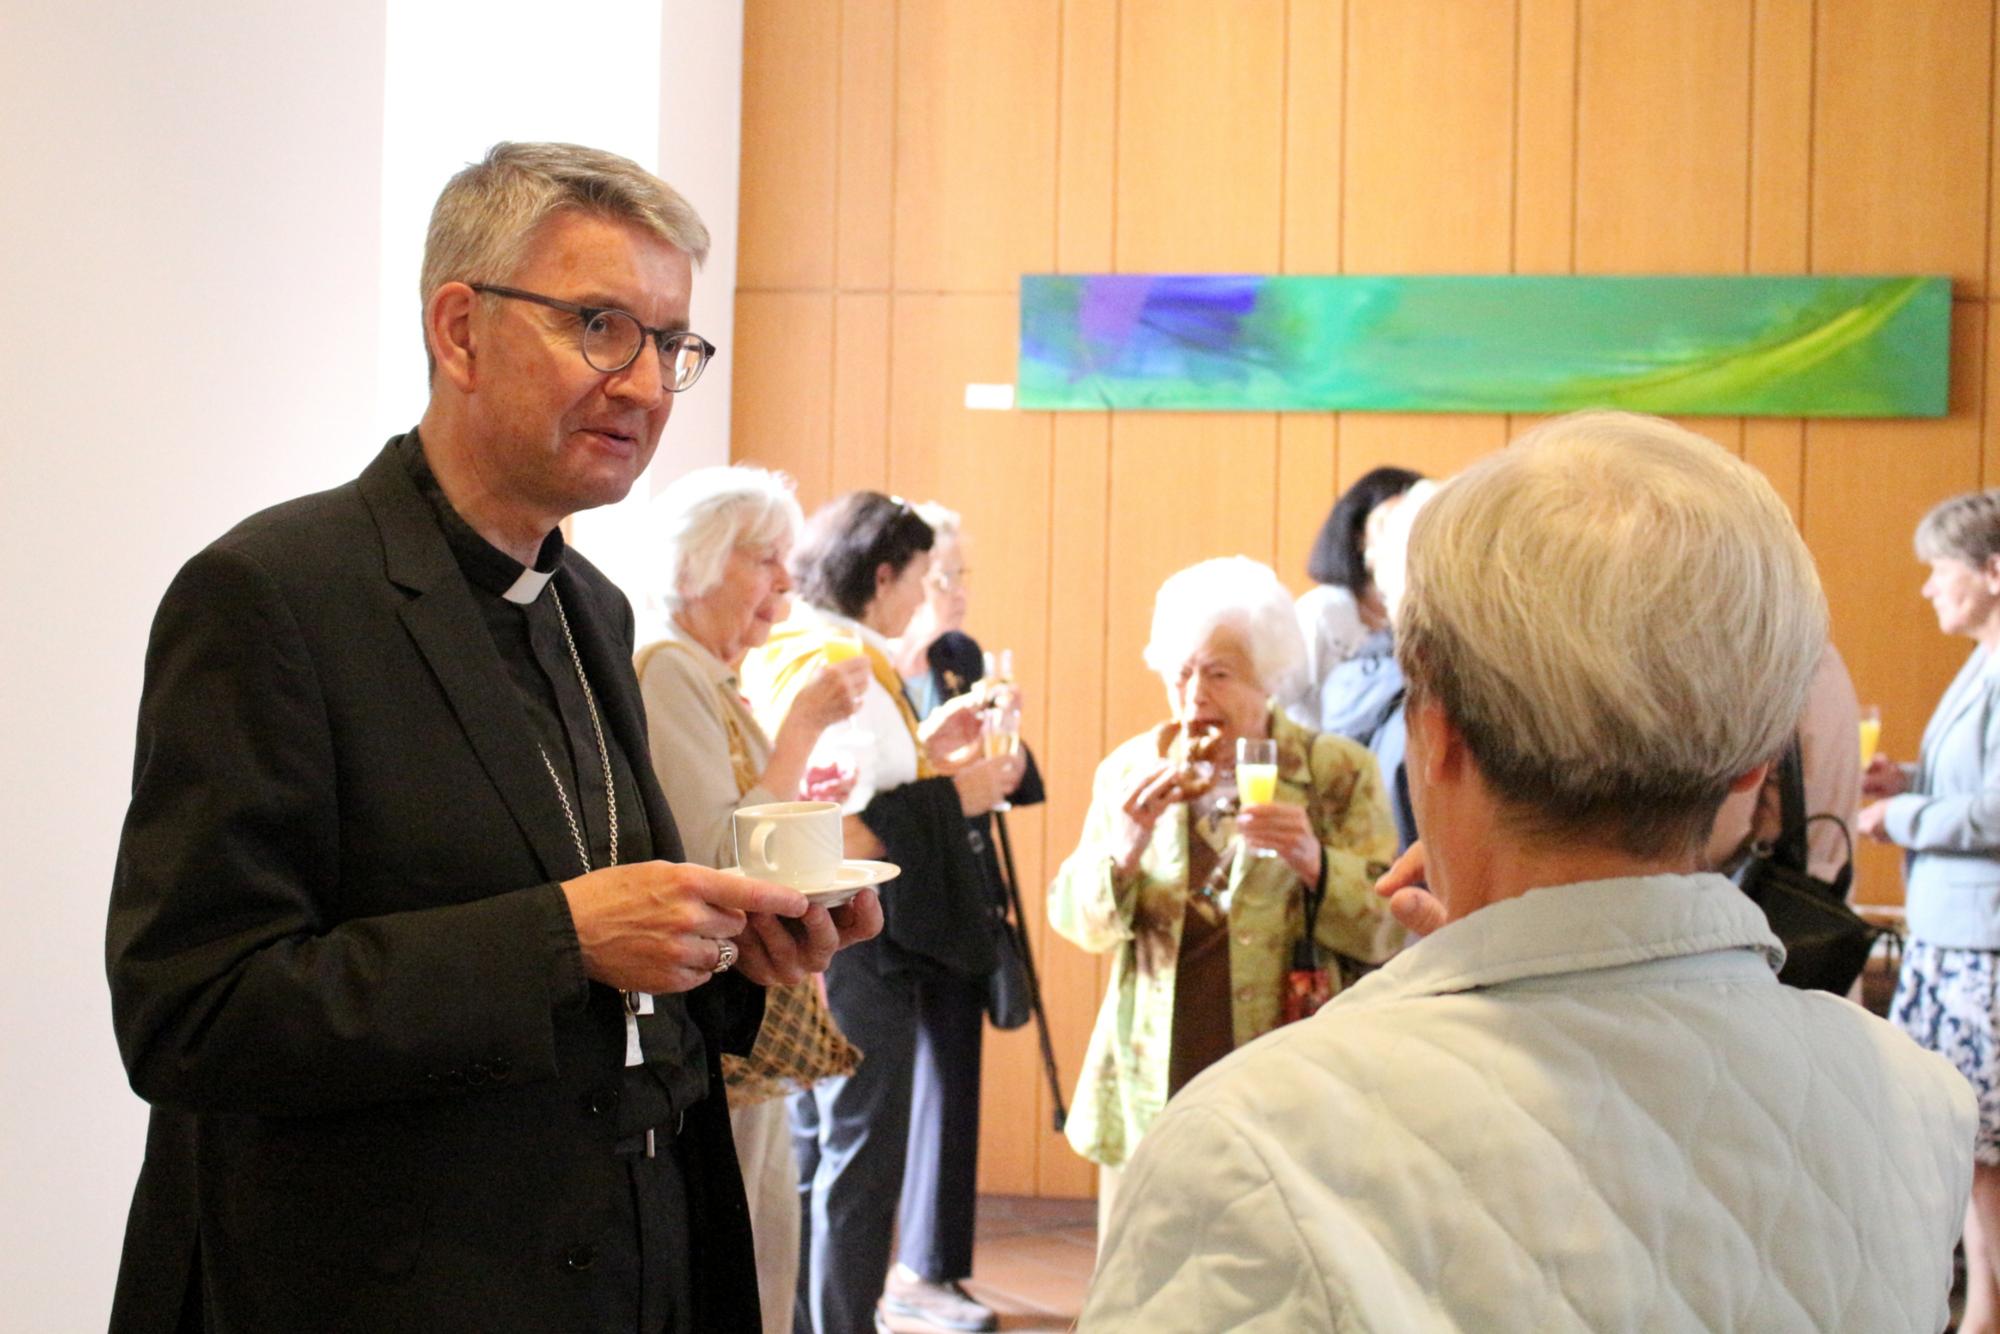 Mainz, 8. Juni 2022: Bischof Peter Kohlgraf im Gespräch beim Jubiläum der Pfarrhaushälterinnen im Bistum Mainz. (c) Bistum Mainz / Blum